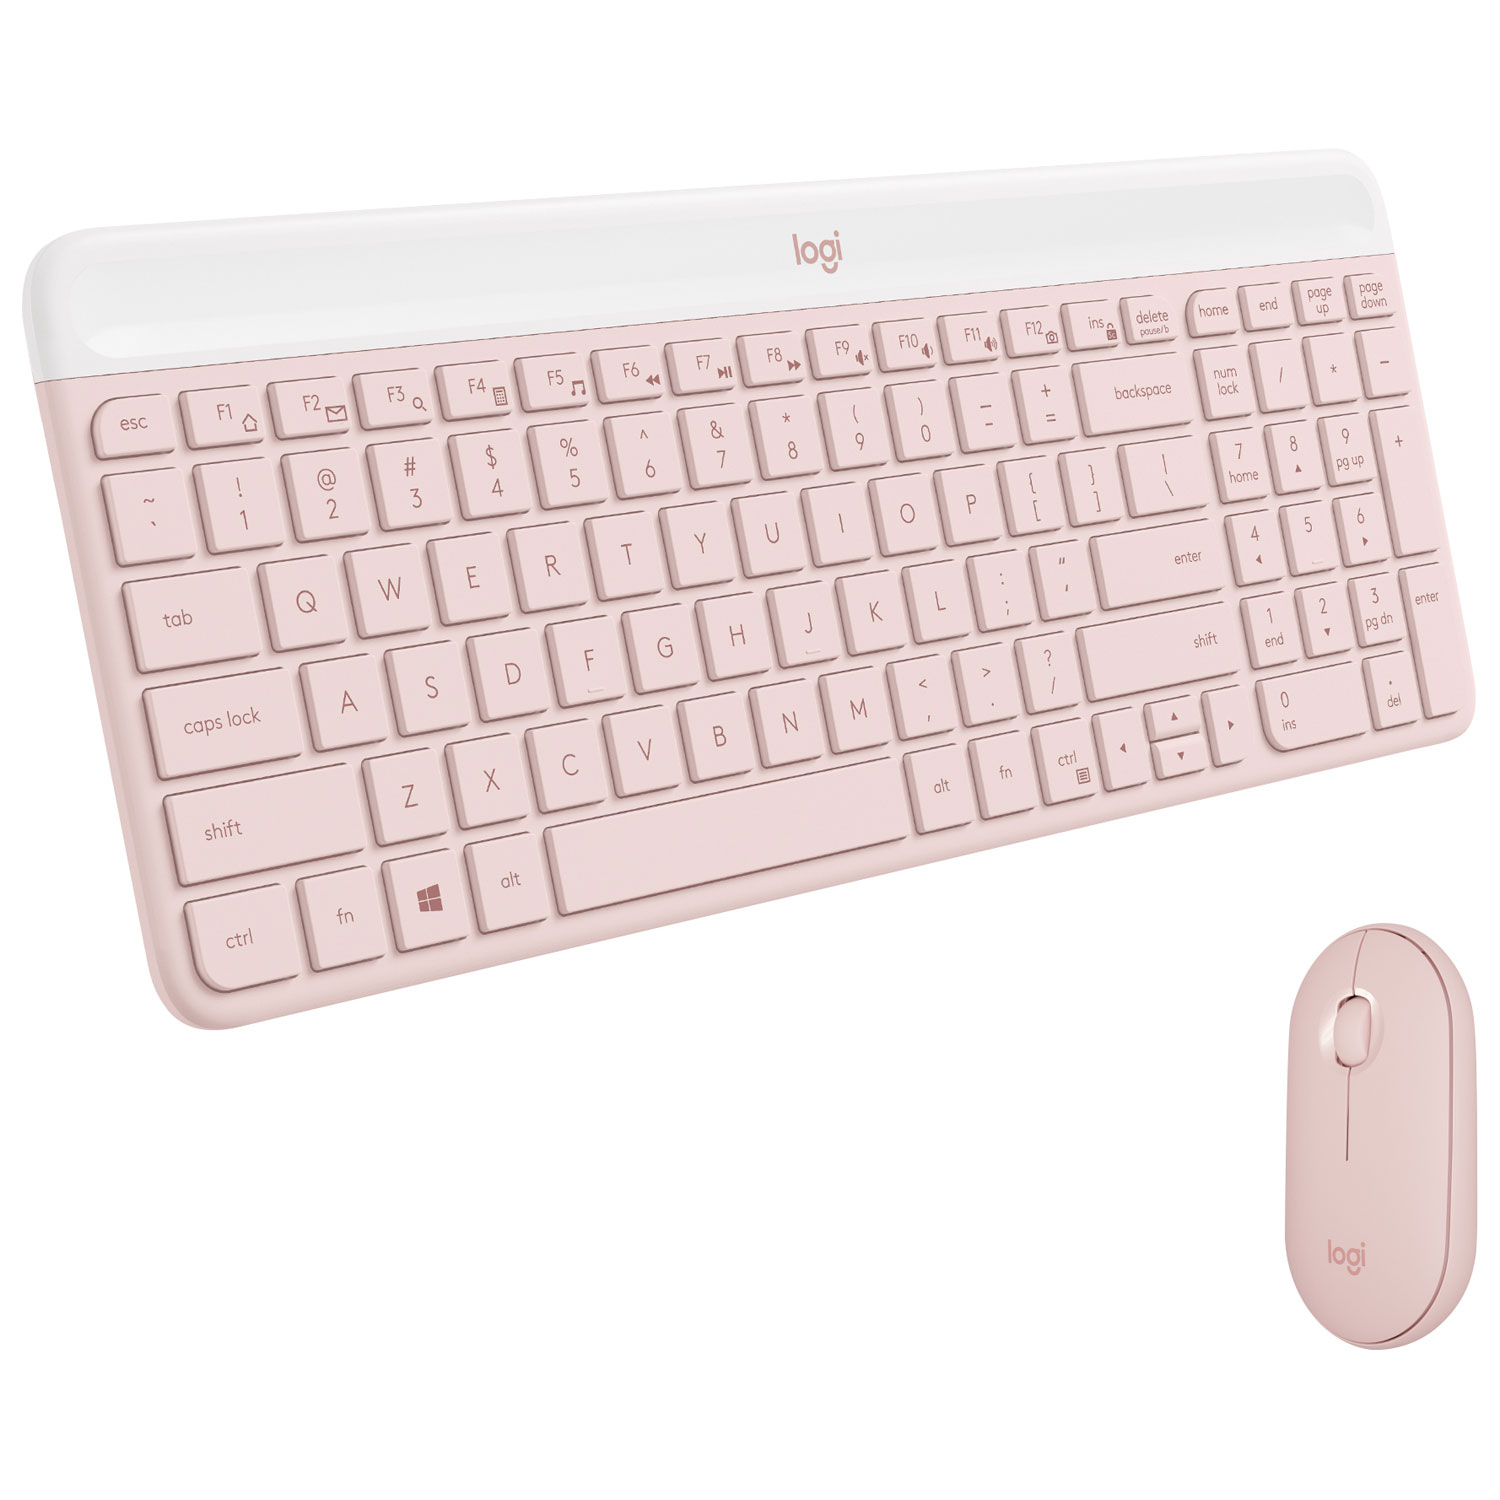 Logitech MK470 Slim Combo Wireless Optical Keyboard & Mouse Combo - Pink - English